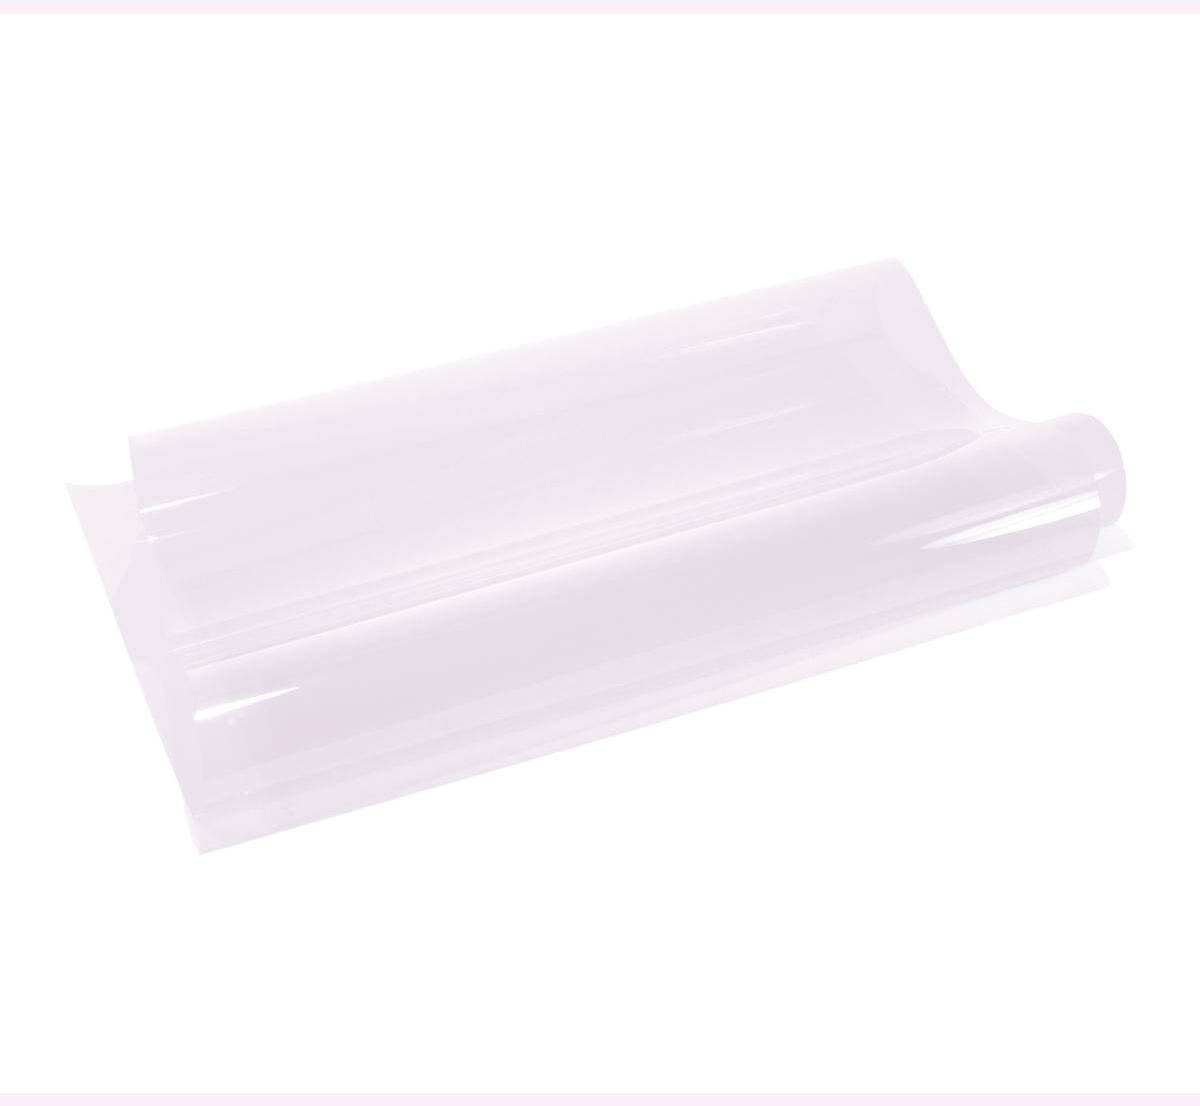 An image of 003 Lavender Tint Lighting Gel Sheet